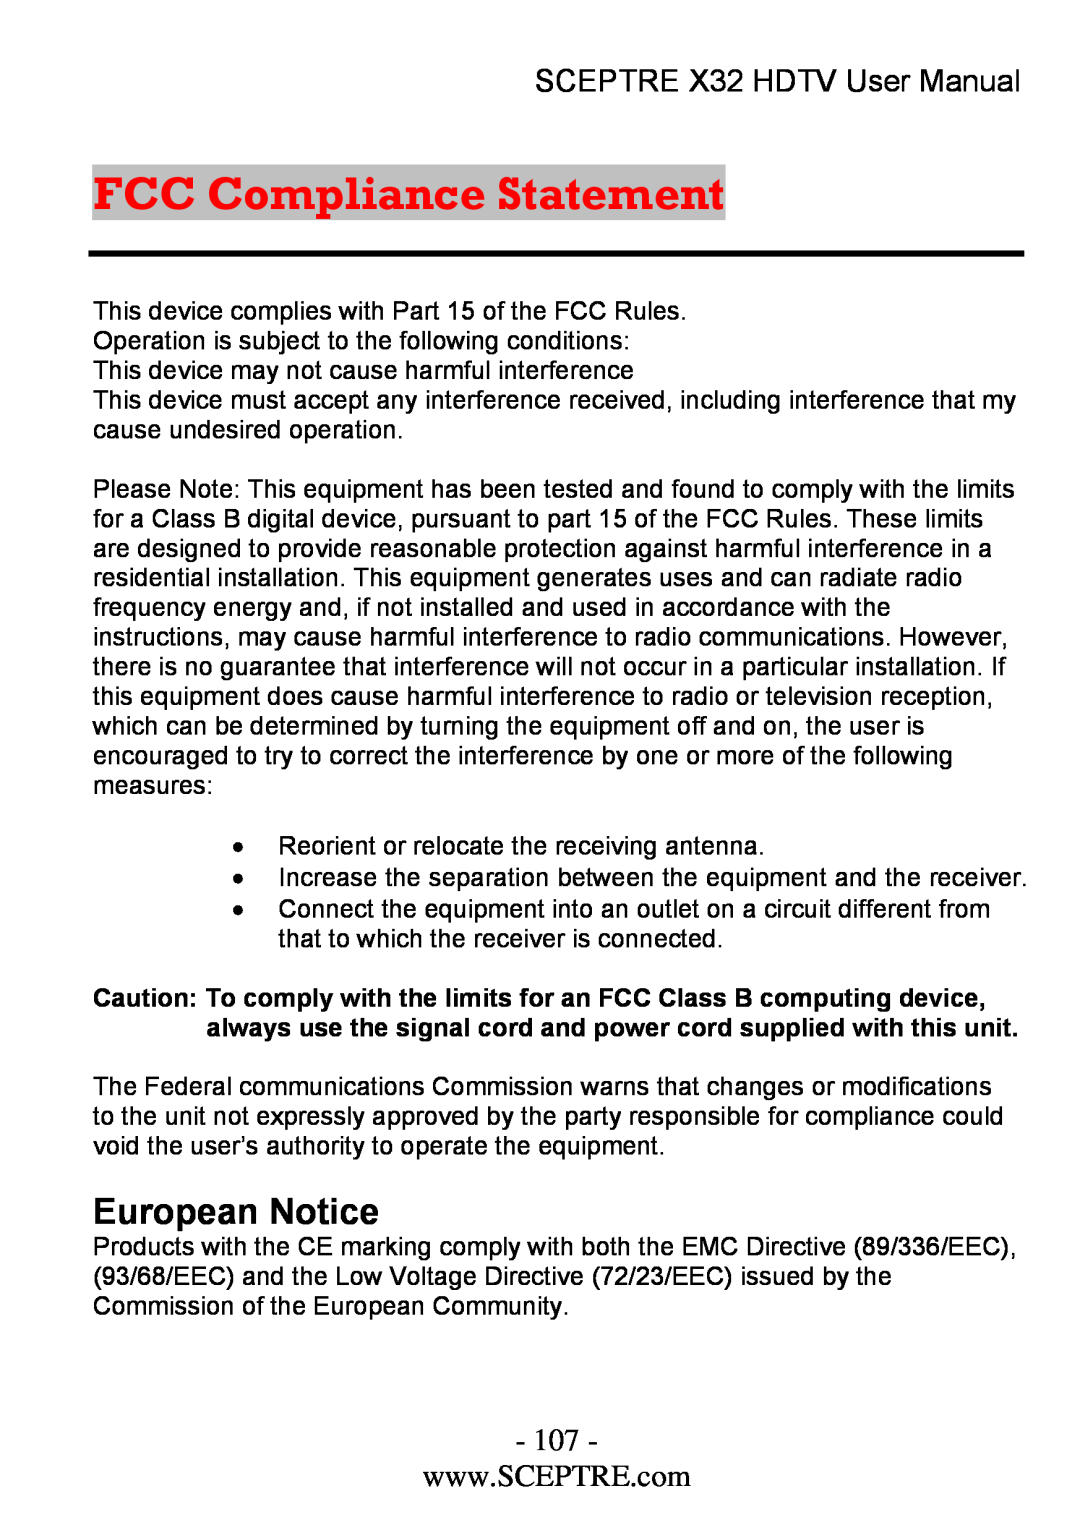 Sceptre Technologies x32 user manual FCC Compliance Statement, European Notice, SCEPTRE X32 HDTV User Manual 